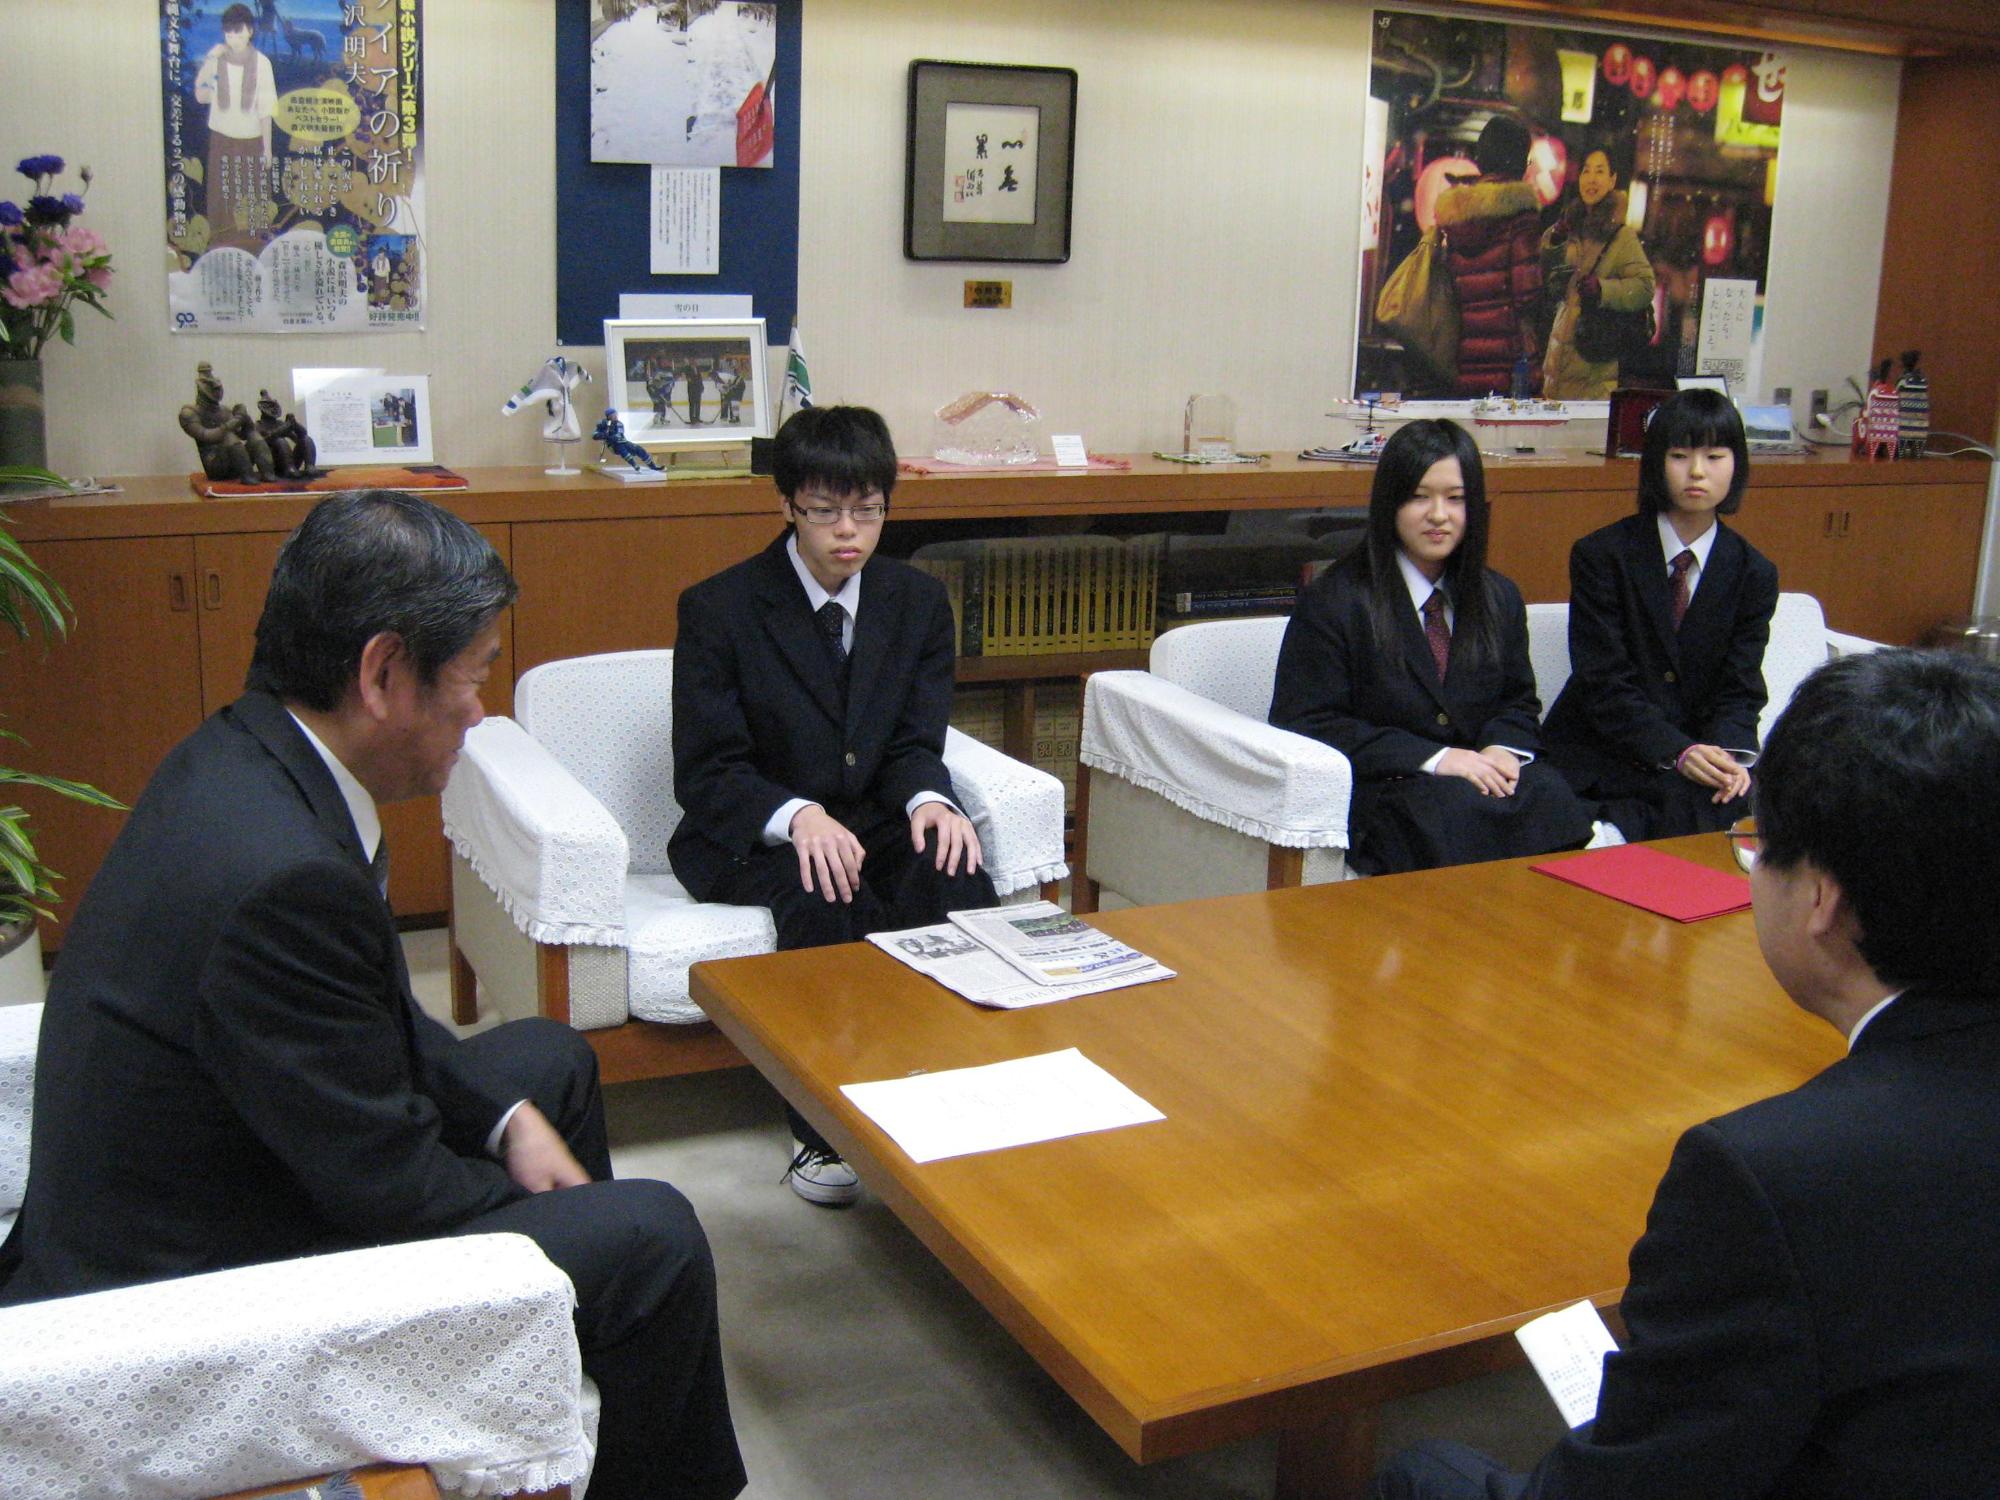 八戸工業大学第二高等学校の生徒23名及び引率教員2名のうち代表生徒3名が小林市長に表敬訪問し、小林市長らと談笑している写真